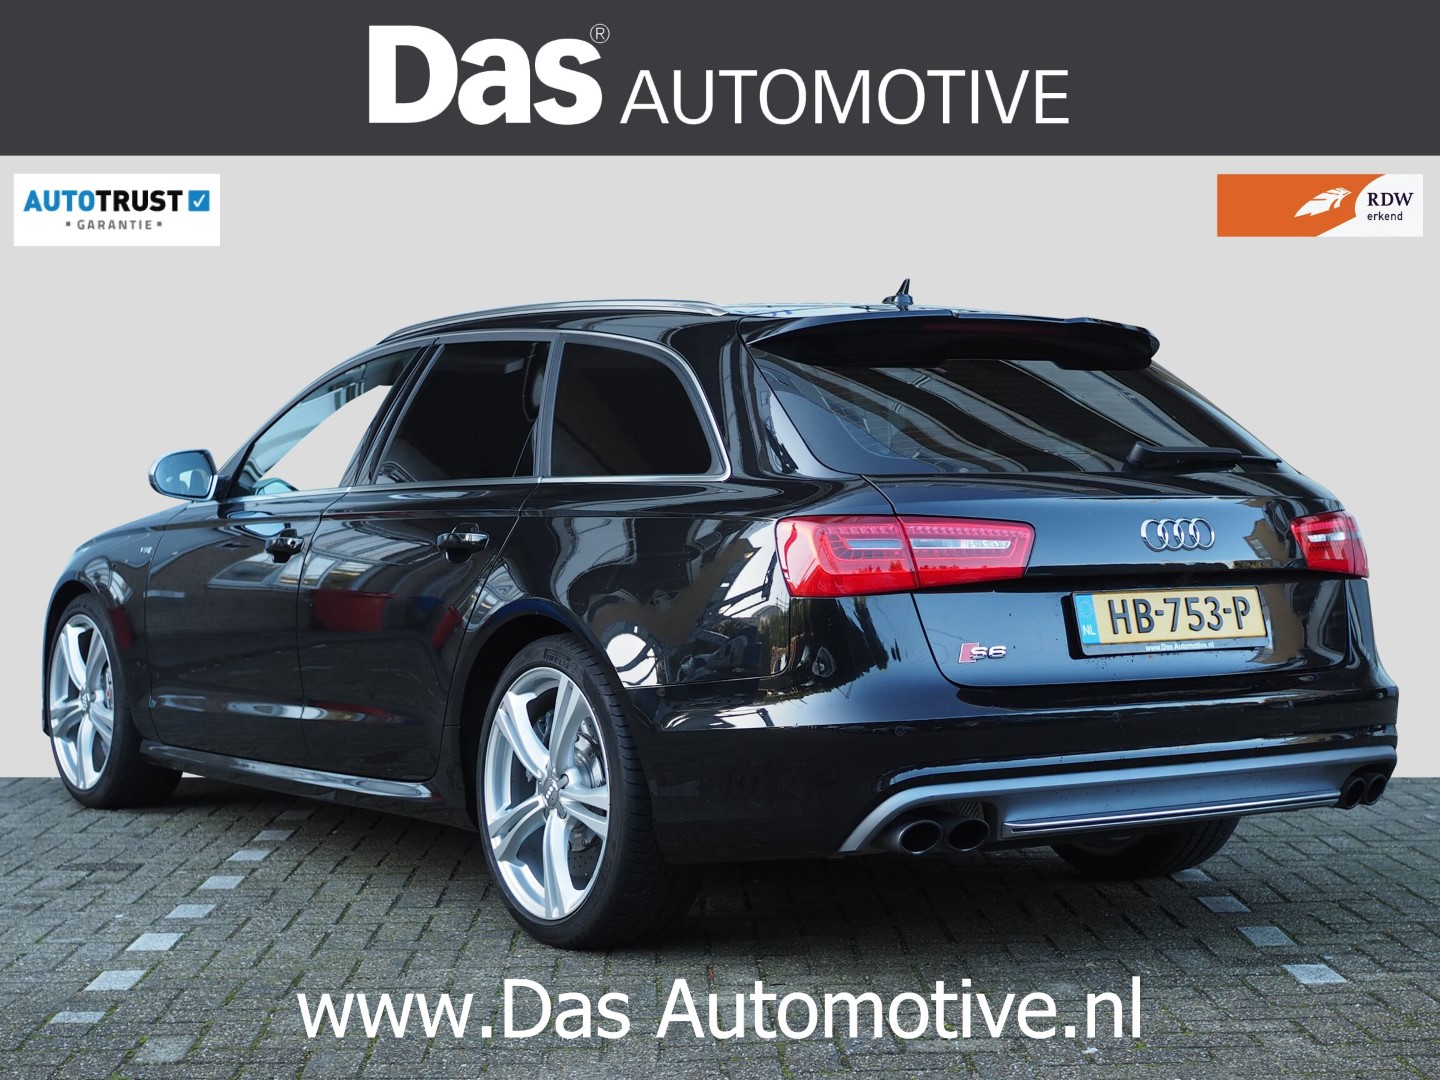 account Snooze Augment Te koop: uit Duitsland geimporteerde Audi S6 Avant (06/2013)